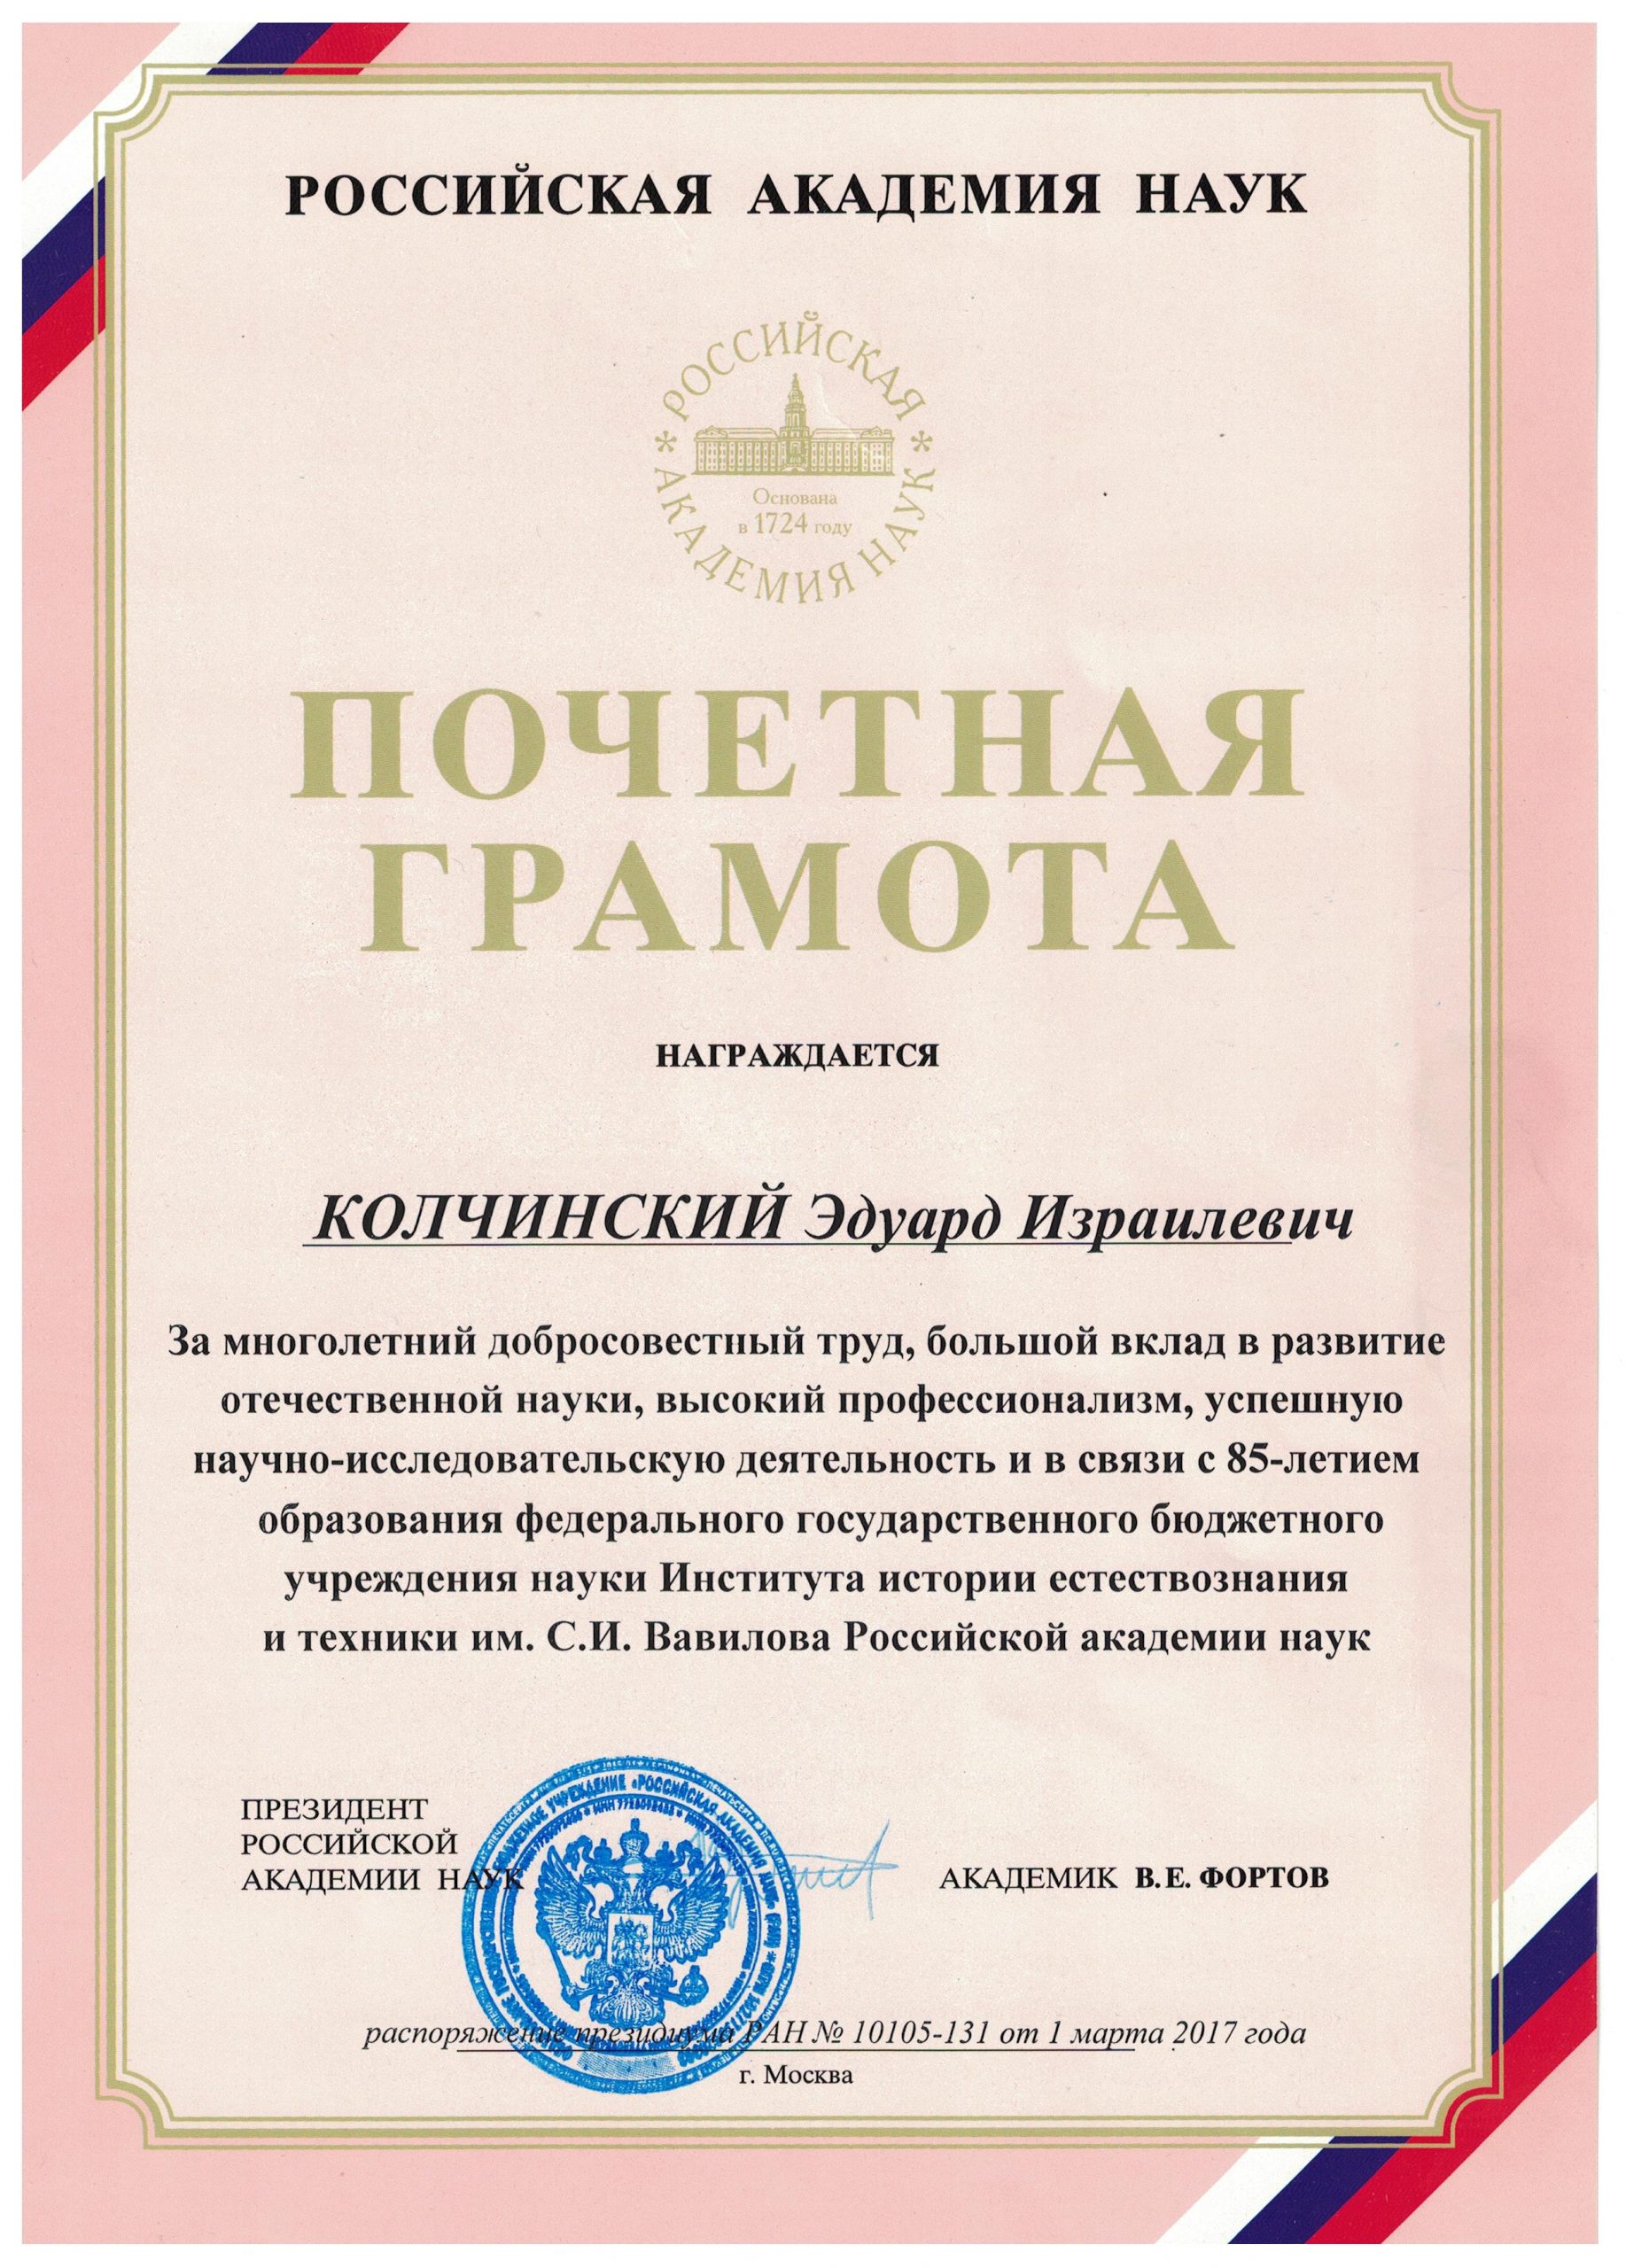 Почетная грамота РАН (2017)